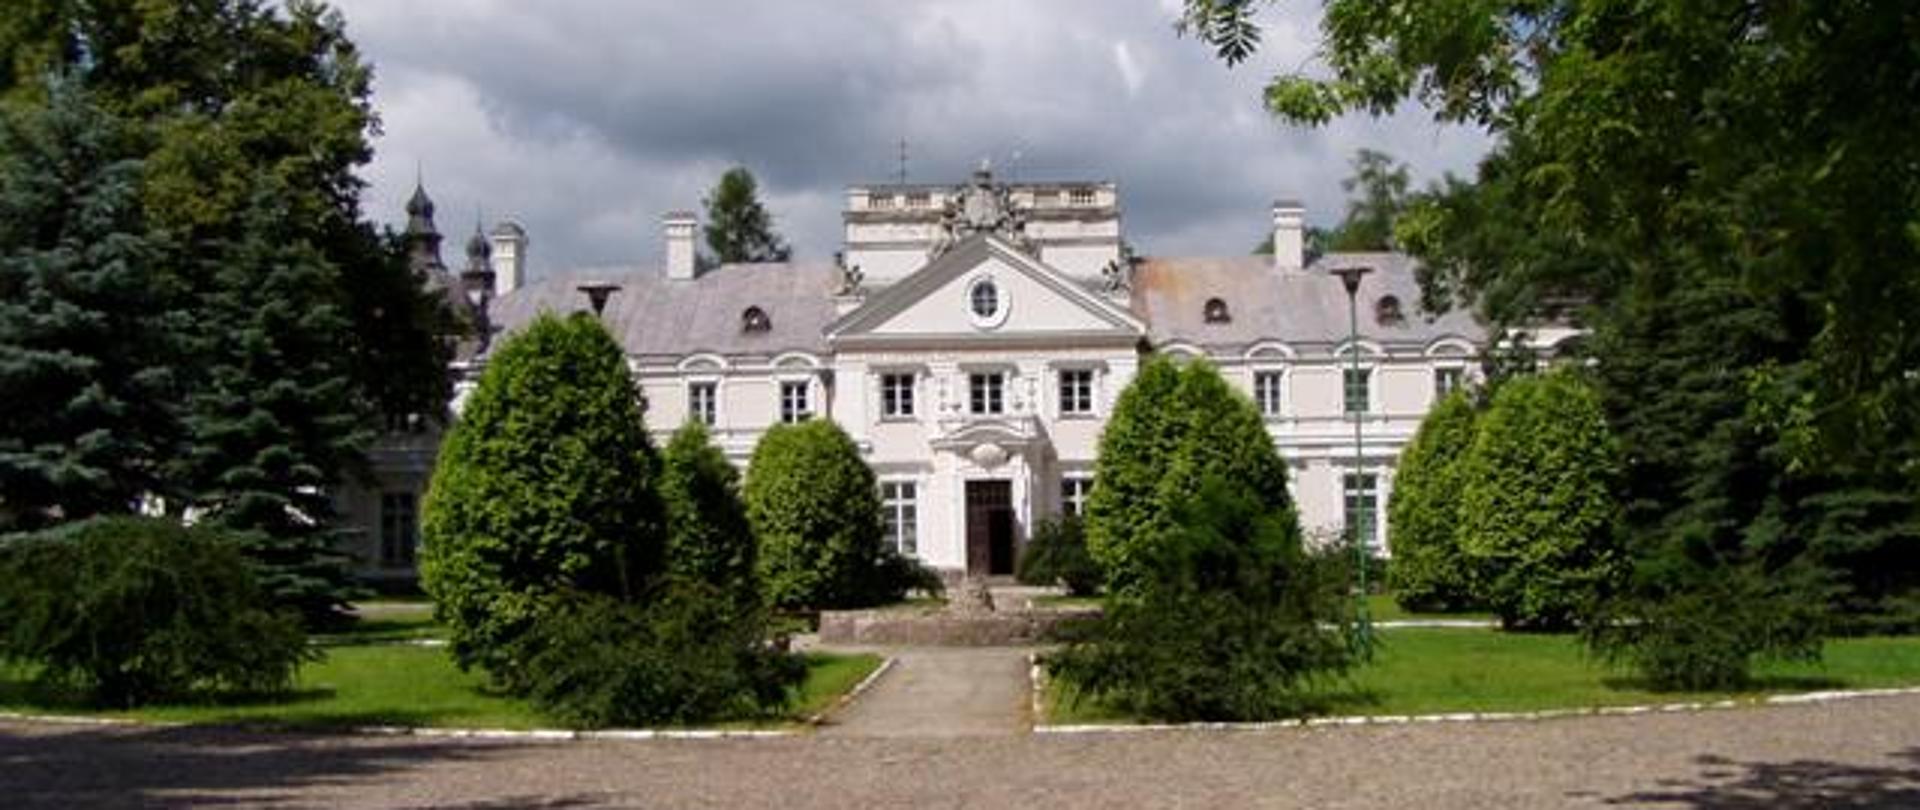 Barokowy pałac Ossolińskich w Rudce, XVIII w. (fot. M. Sarnacki)
